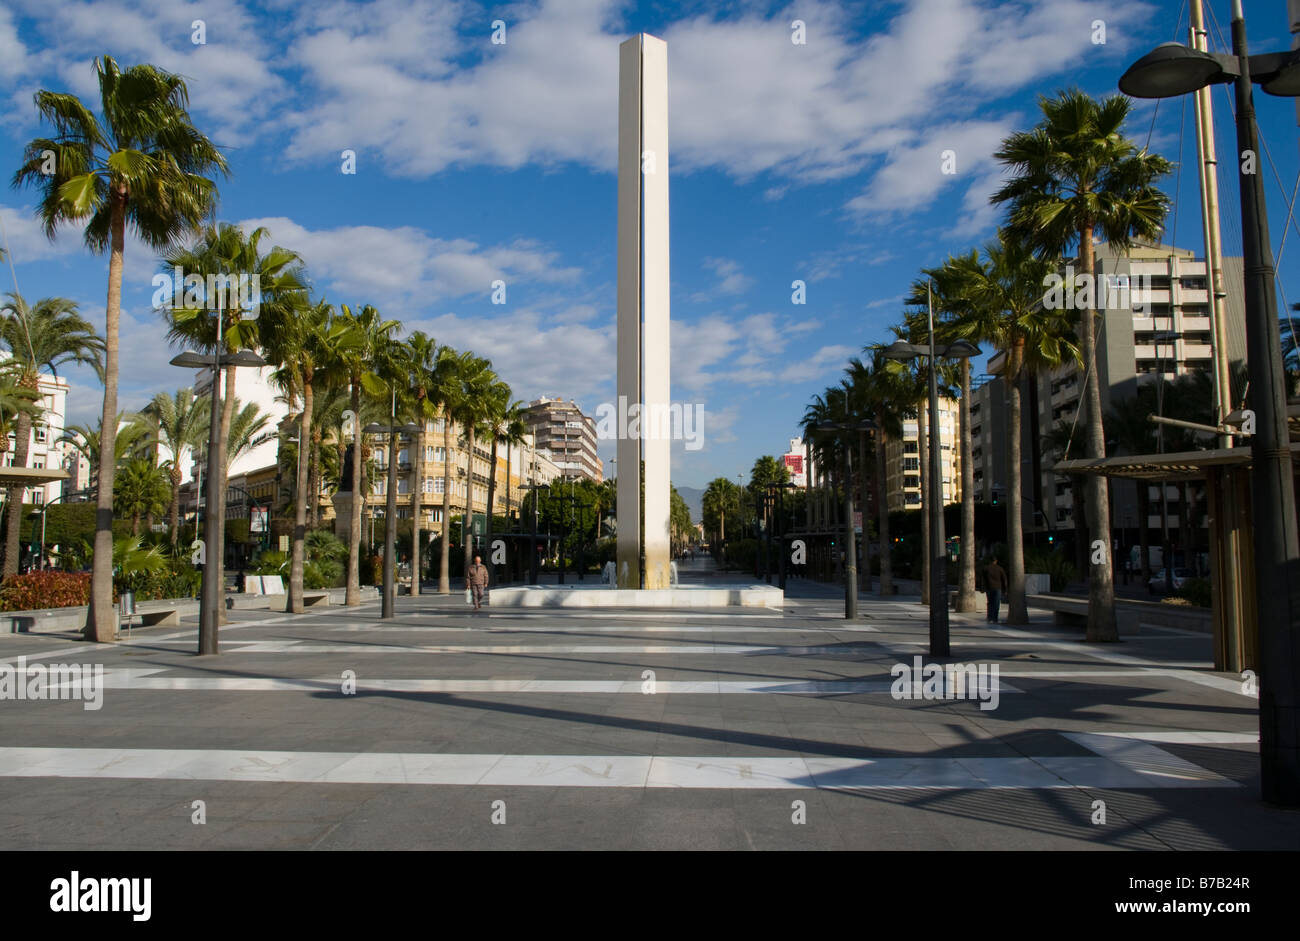 Monument sur la Reina Regente Almeria Espagne Espagnol avenue bordée de palmiers Banque D'Images